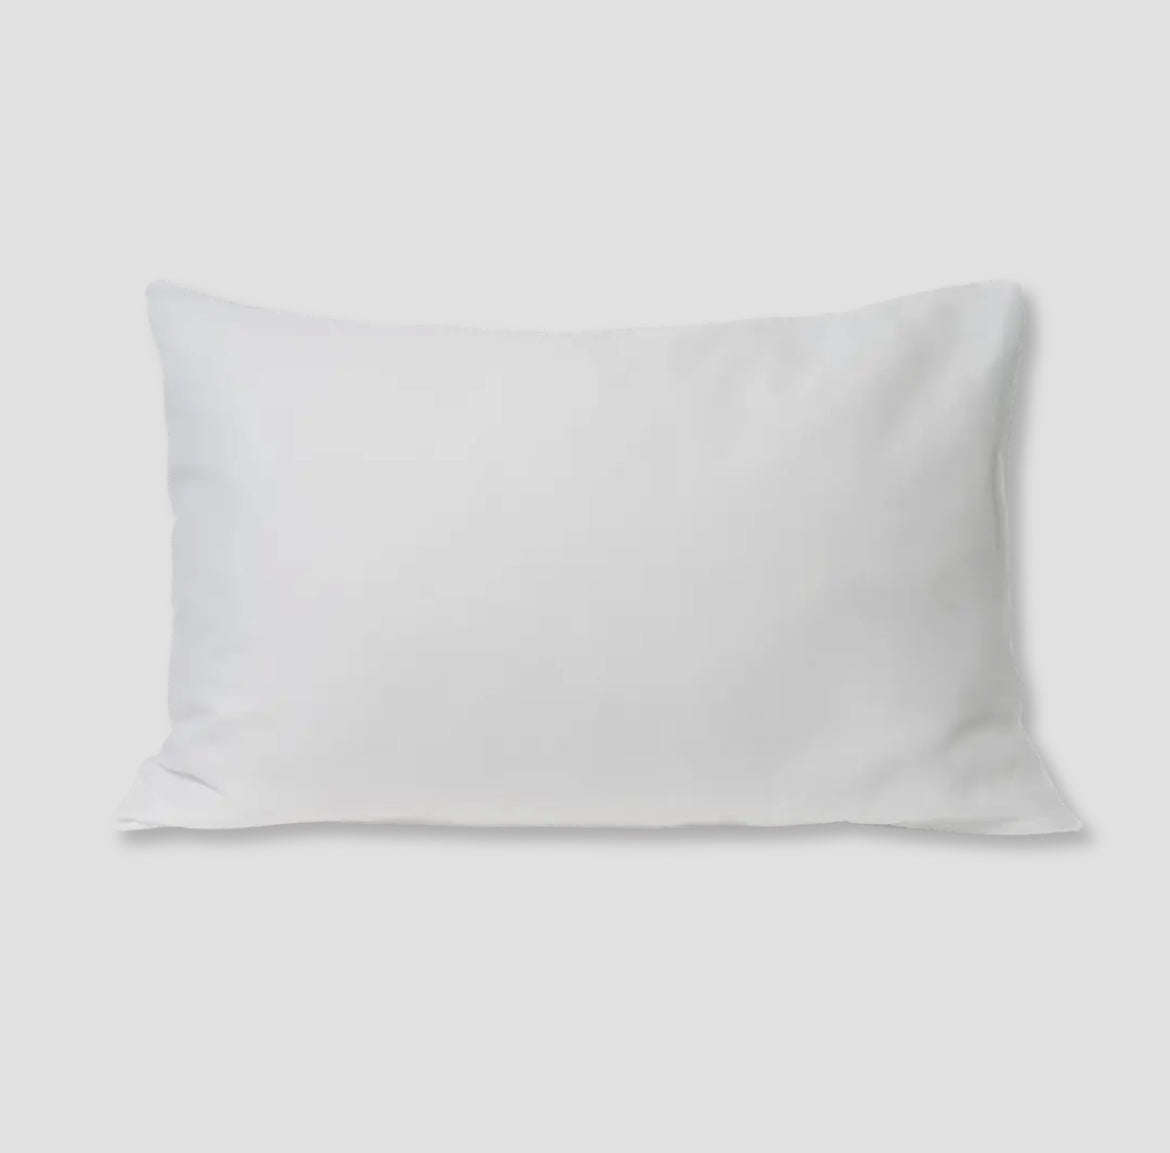 Clean Skin Club: Clean Sleep Silver Ion Pillowcase (Single in Glacier White)